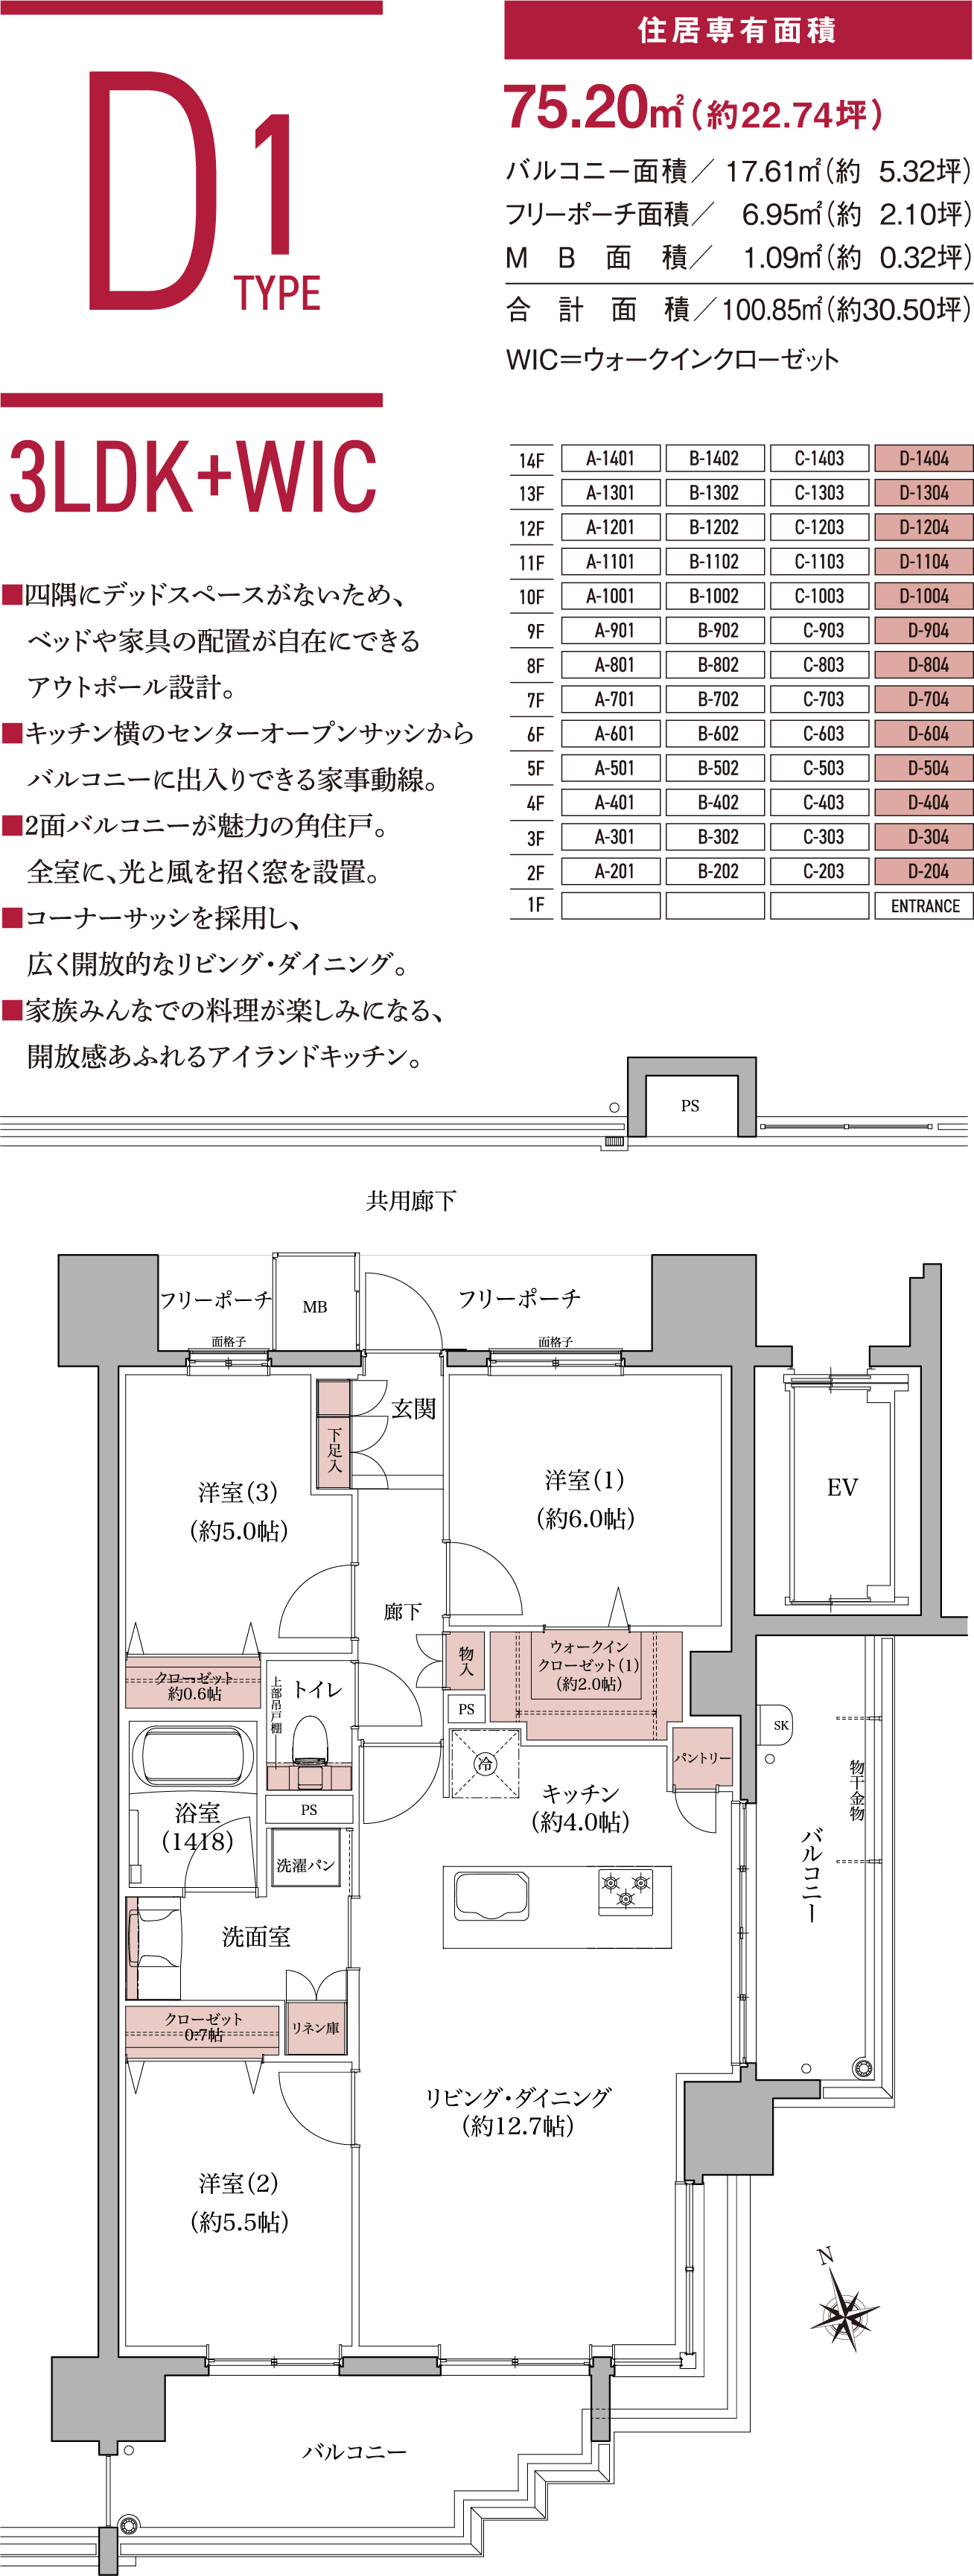 D1TYPE3LDK住居専有面積75.20㎡（約22.74坪）バルコニー面積／17.61㎡（約5.32坪）フリーポーチ面積／   6.95㎡（約2.10坪）MB面積／1.09㎡（約0.32坪）WIC＝ウォークインクローゼット■すべての洋室にウォークインクローゼットを配置。■洋室３の引き戸を開放すればLDと一体化し、ゆとりを感じる角住戸。